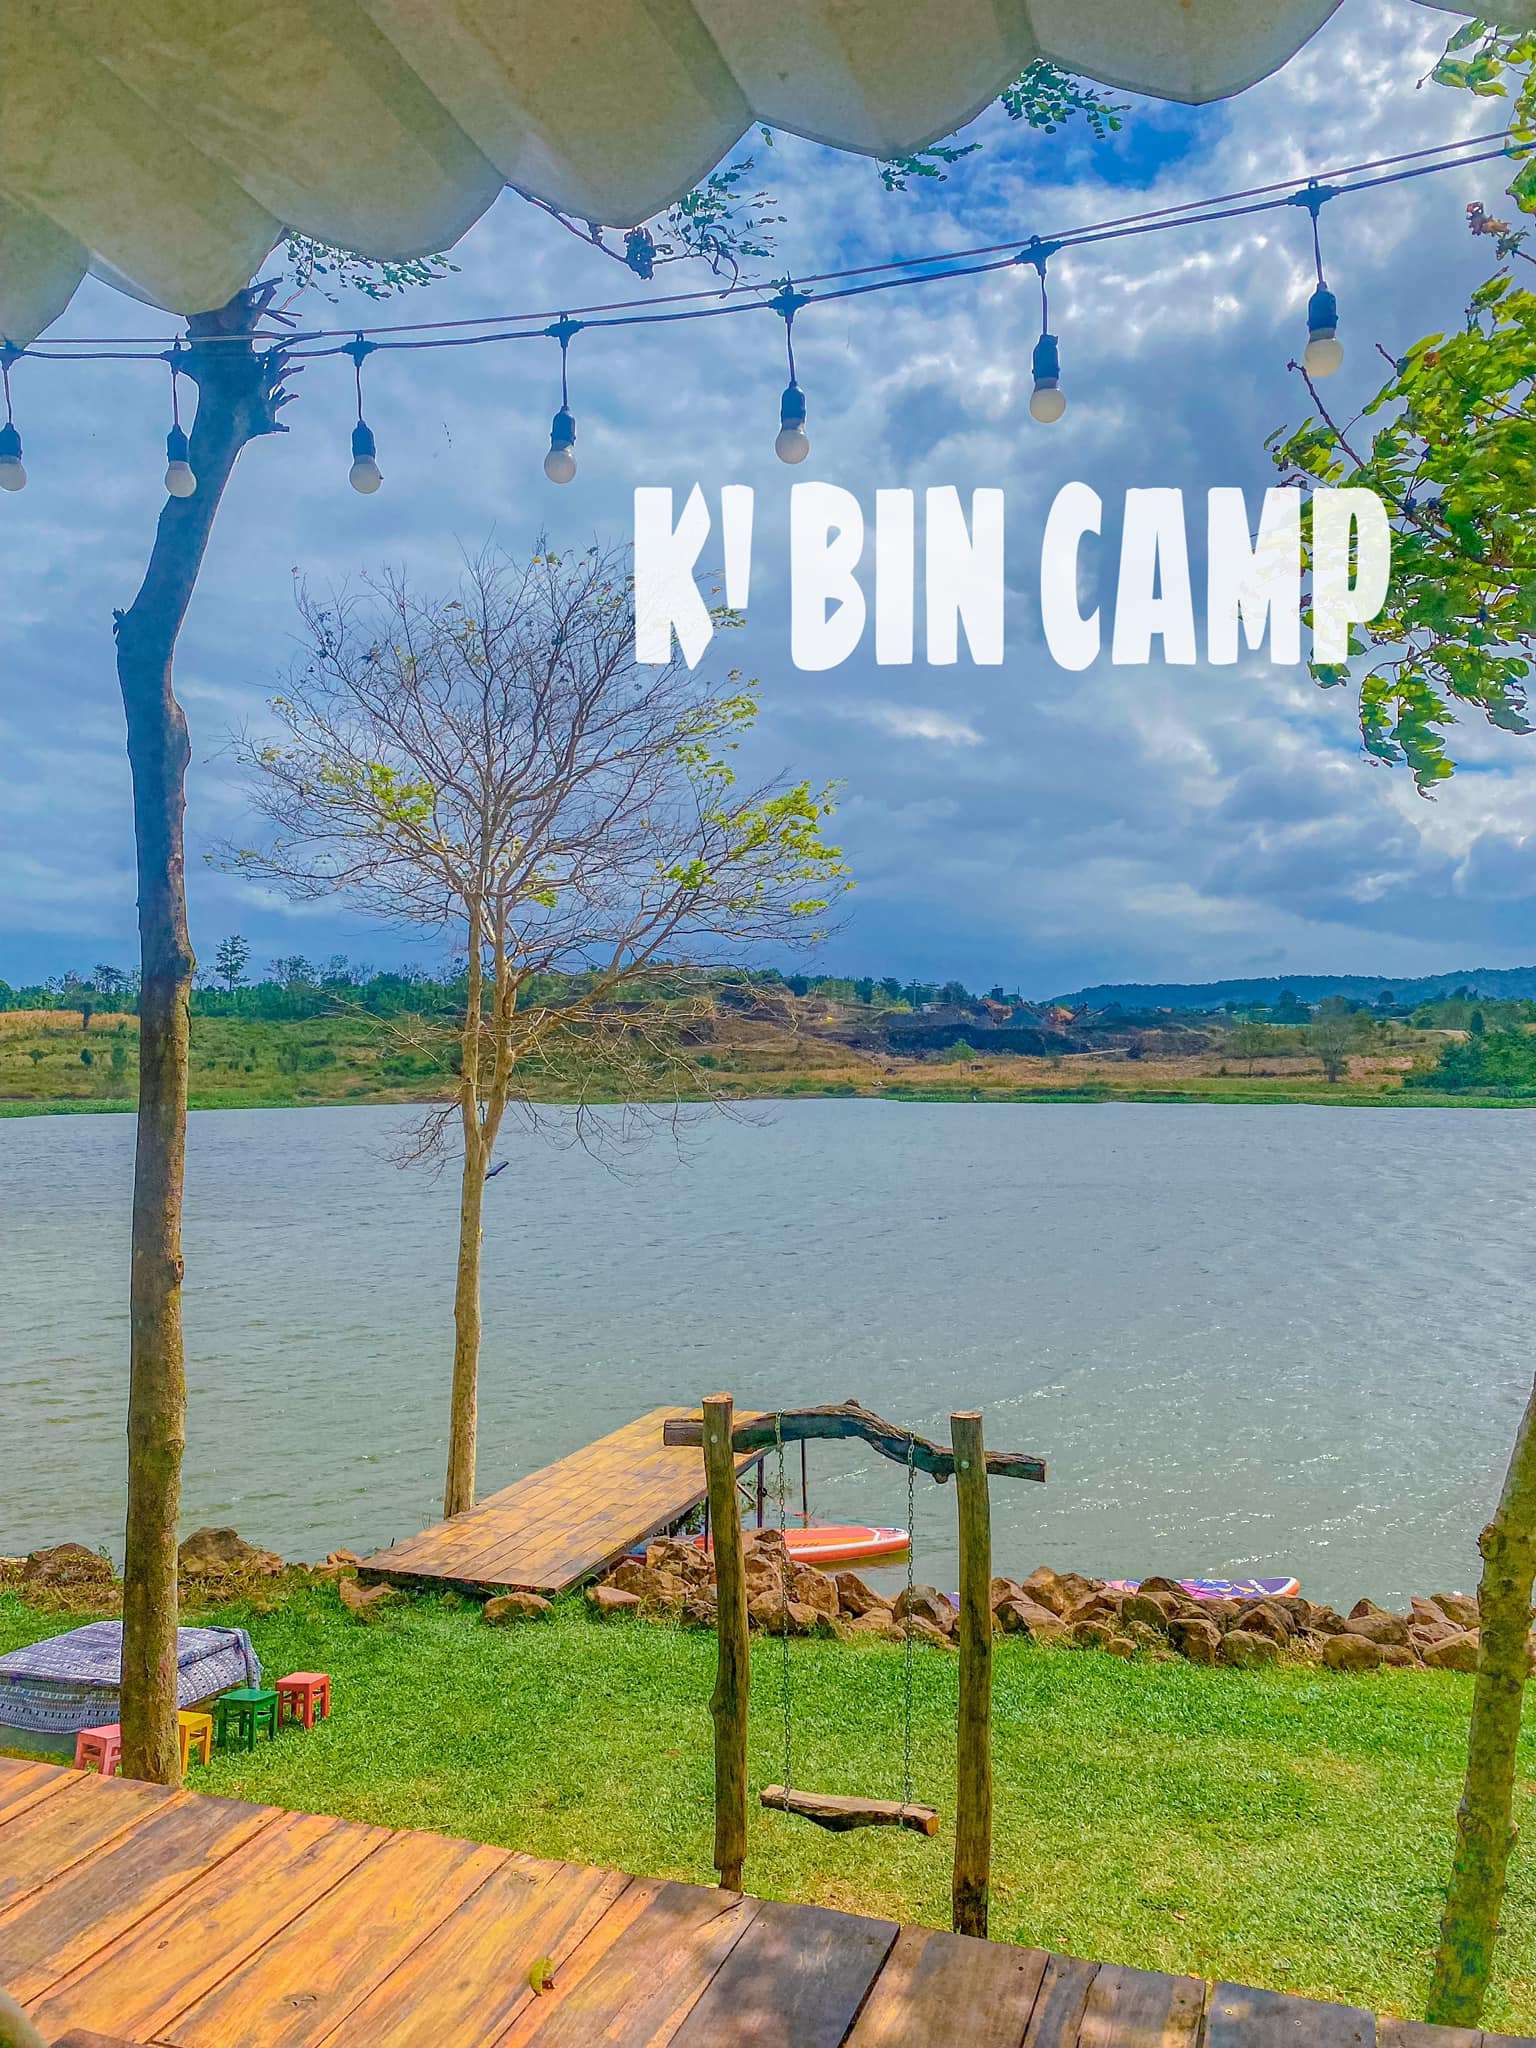 kbin-camp